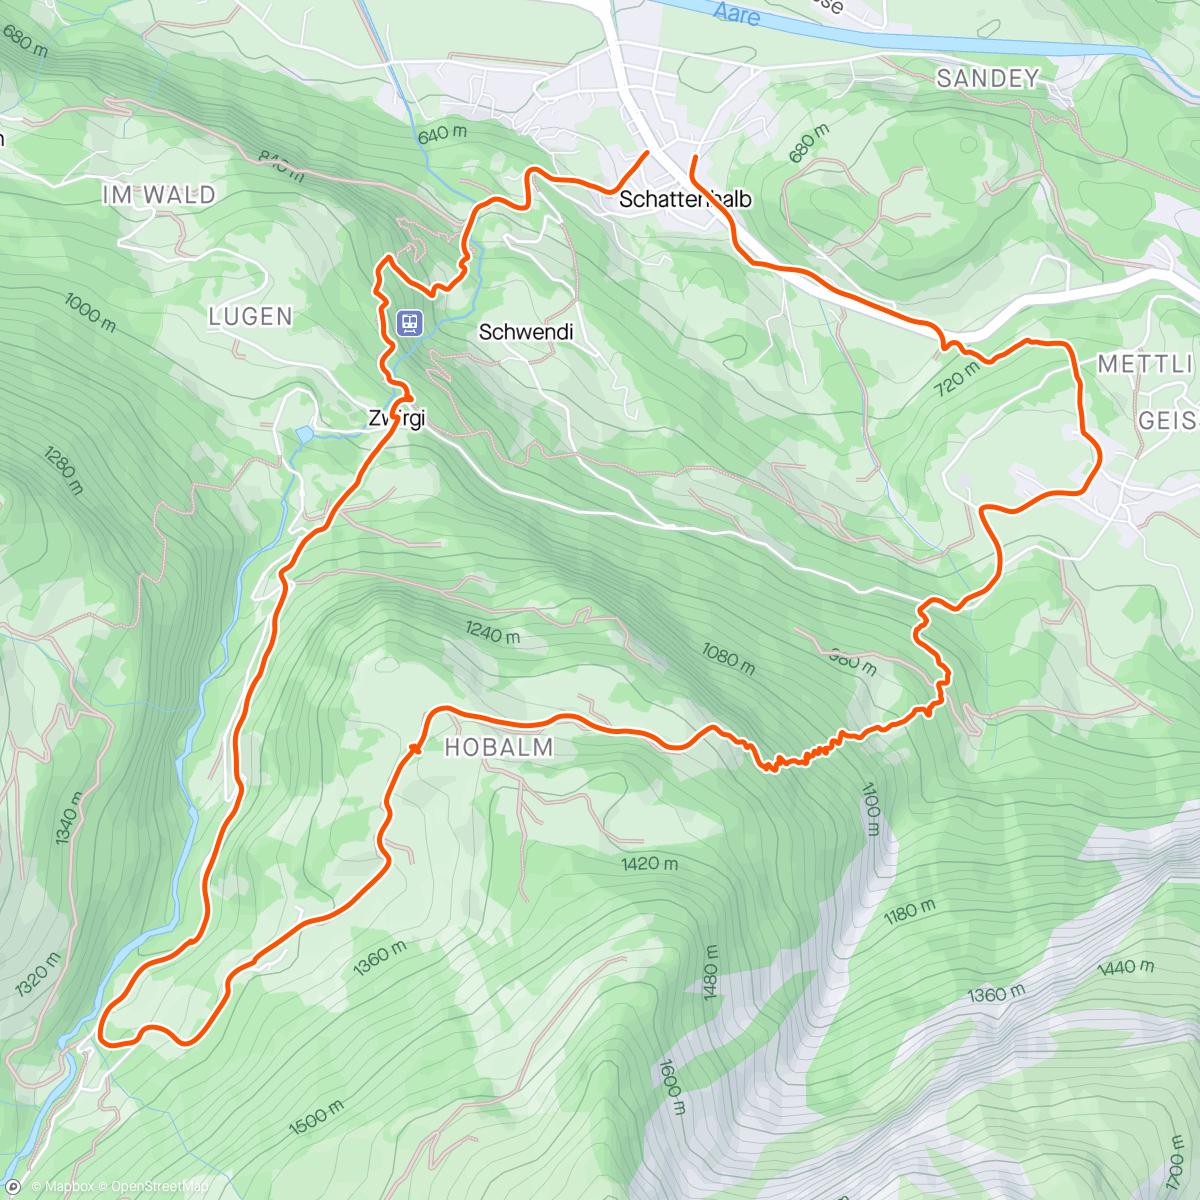 「Hobalm - Kaltenbrunnen - Zwirgi」活動的地圖